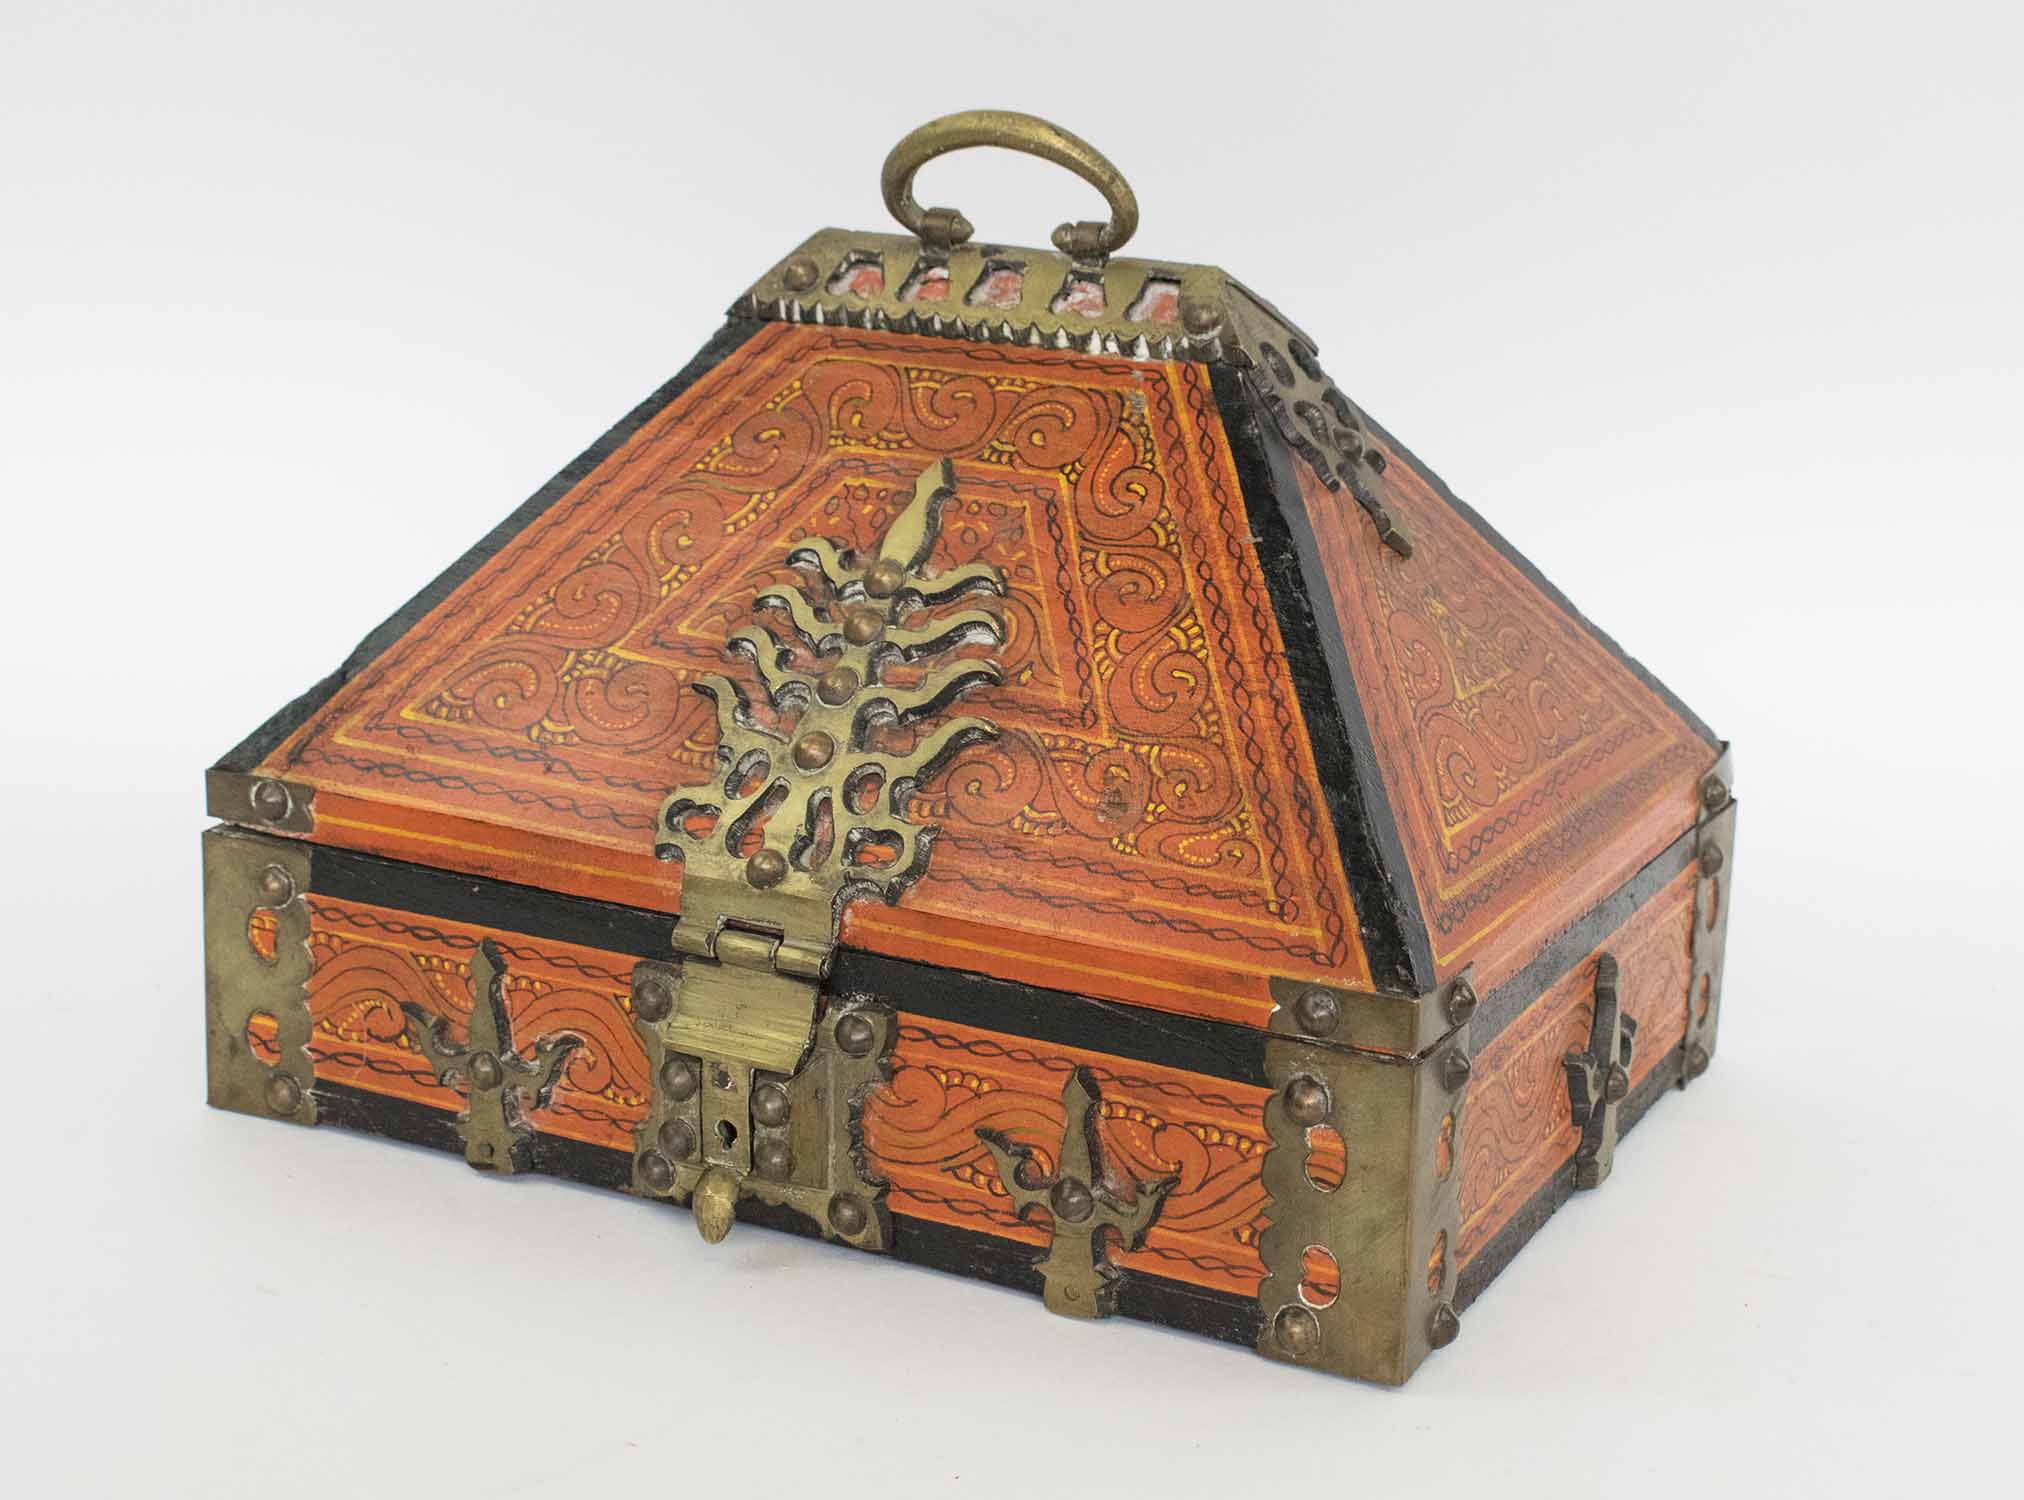 Antique Jewelry Box - Etsy